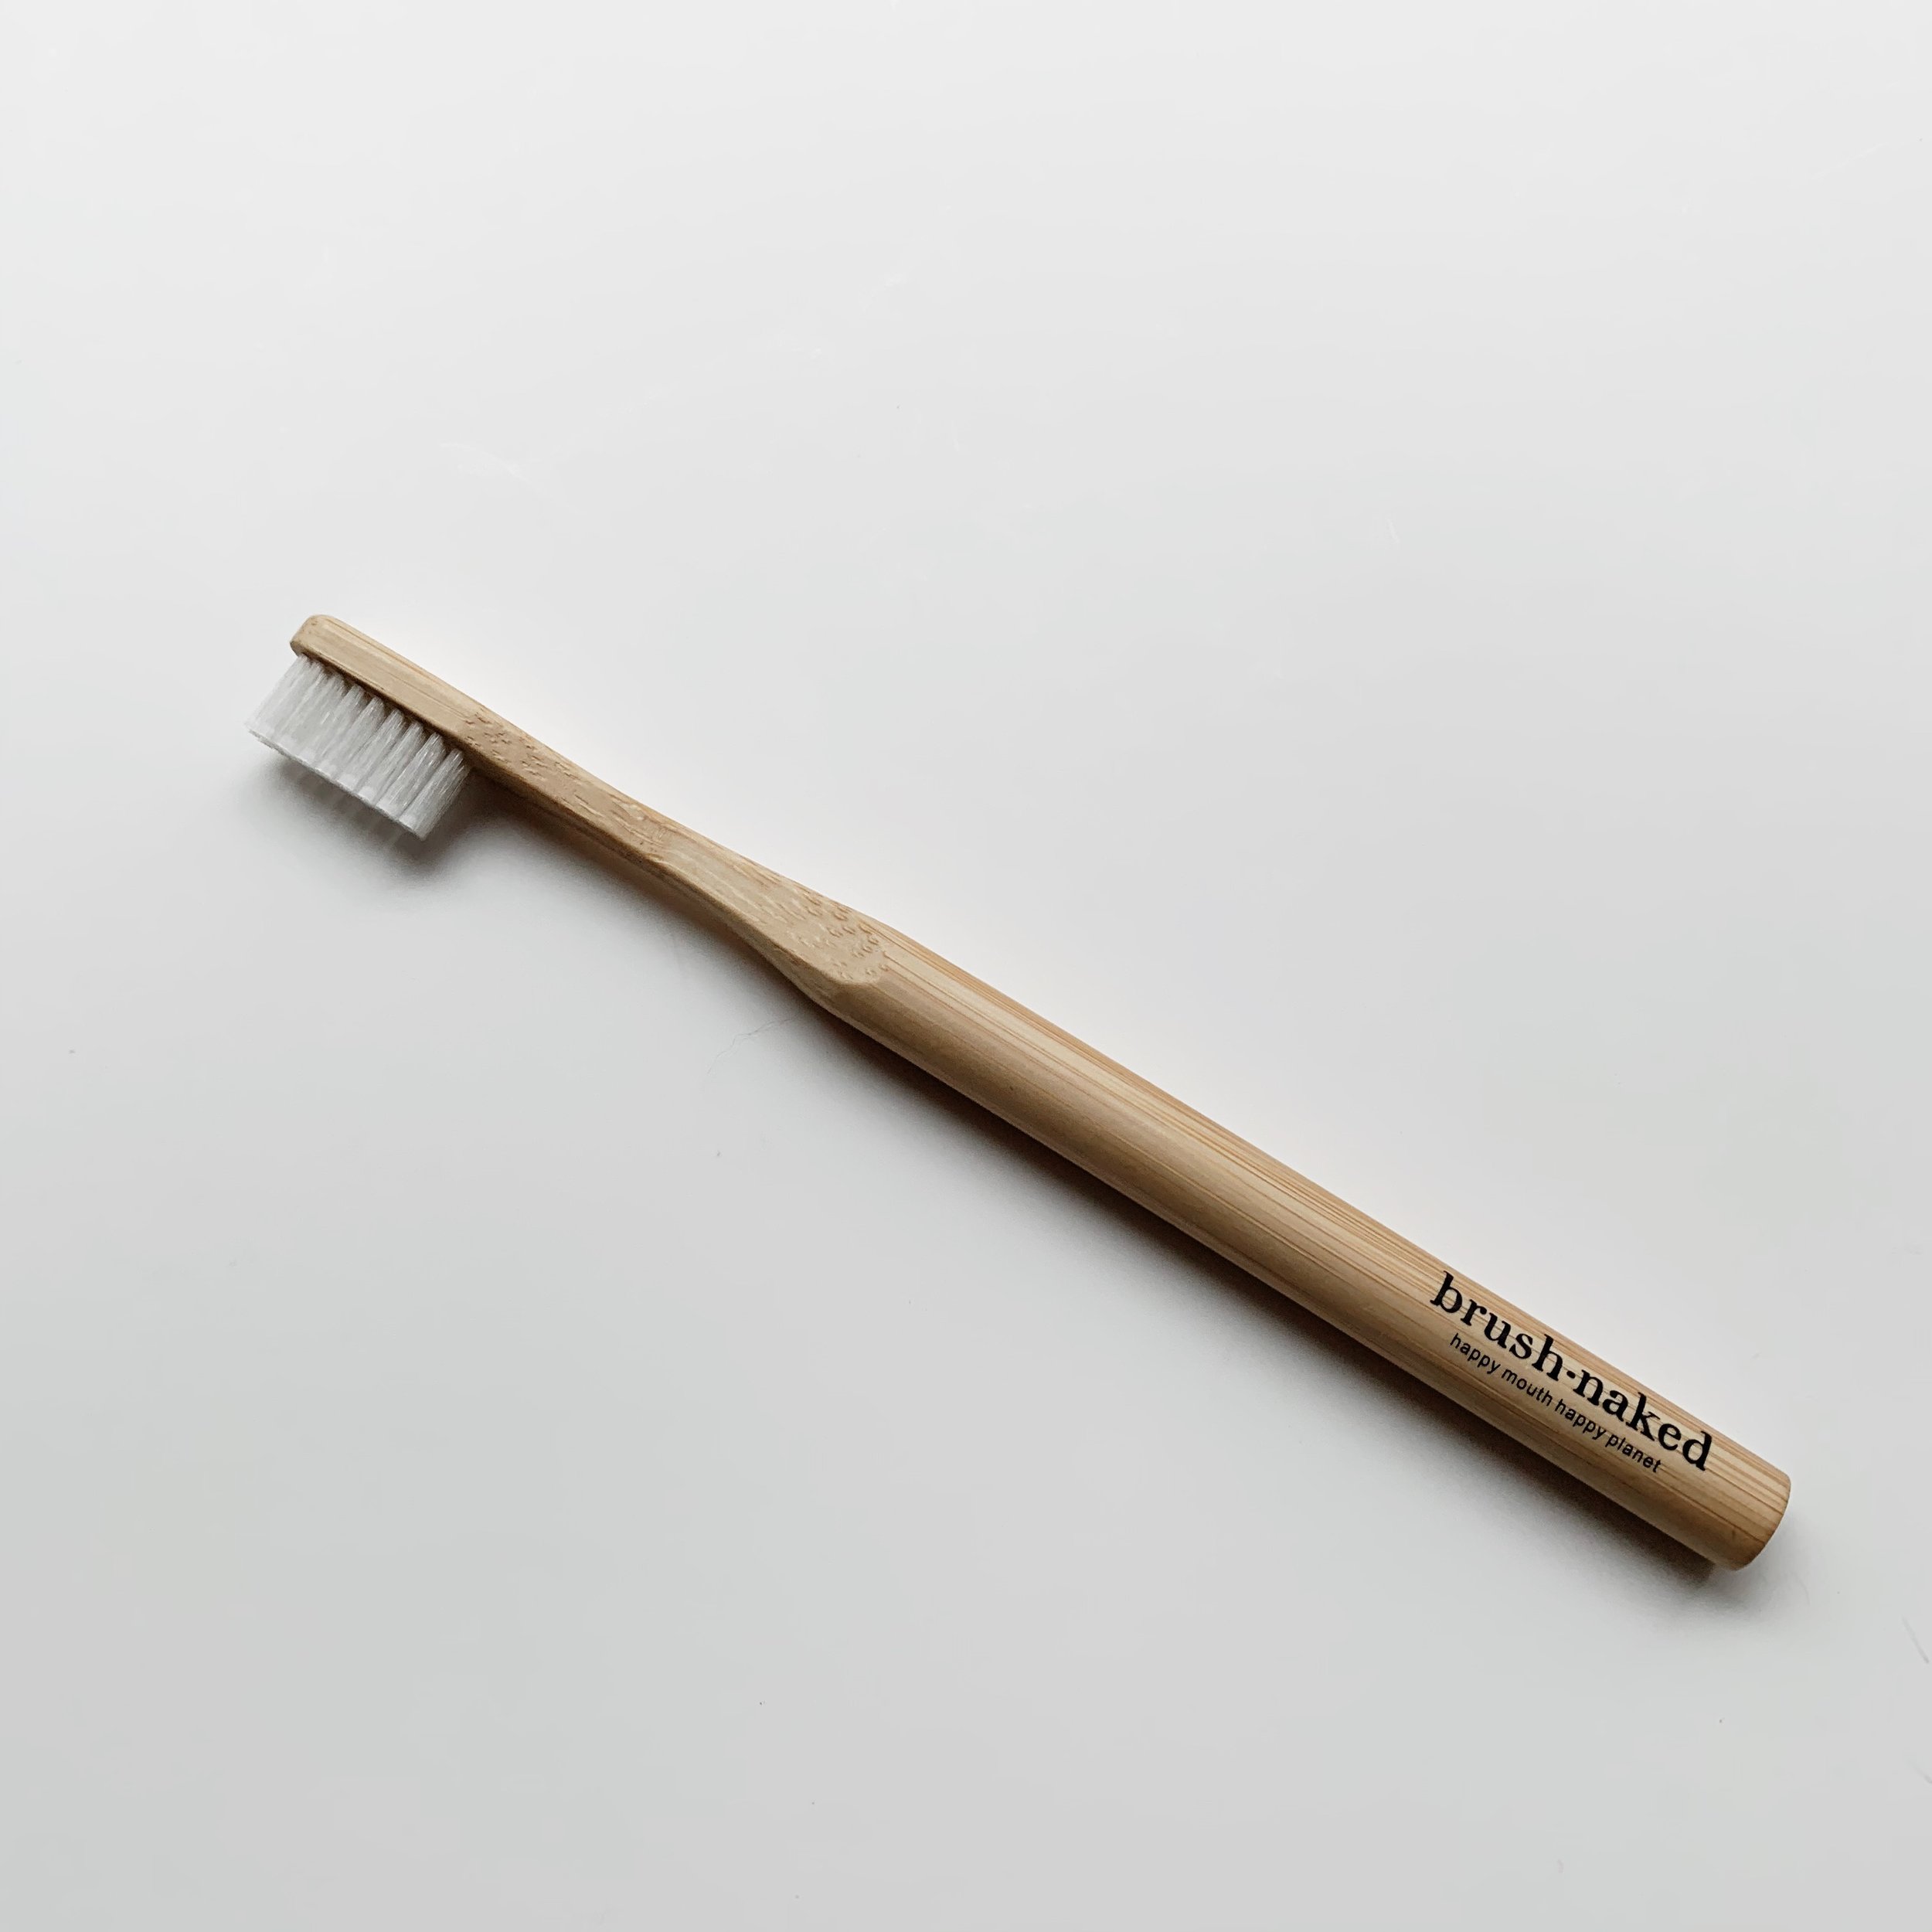 Bamboo Tooth Brush - $6.00